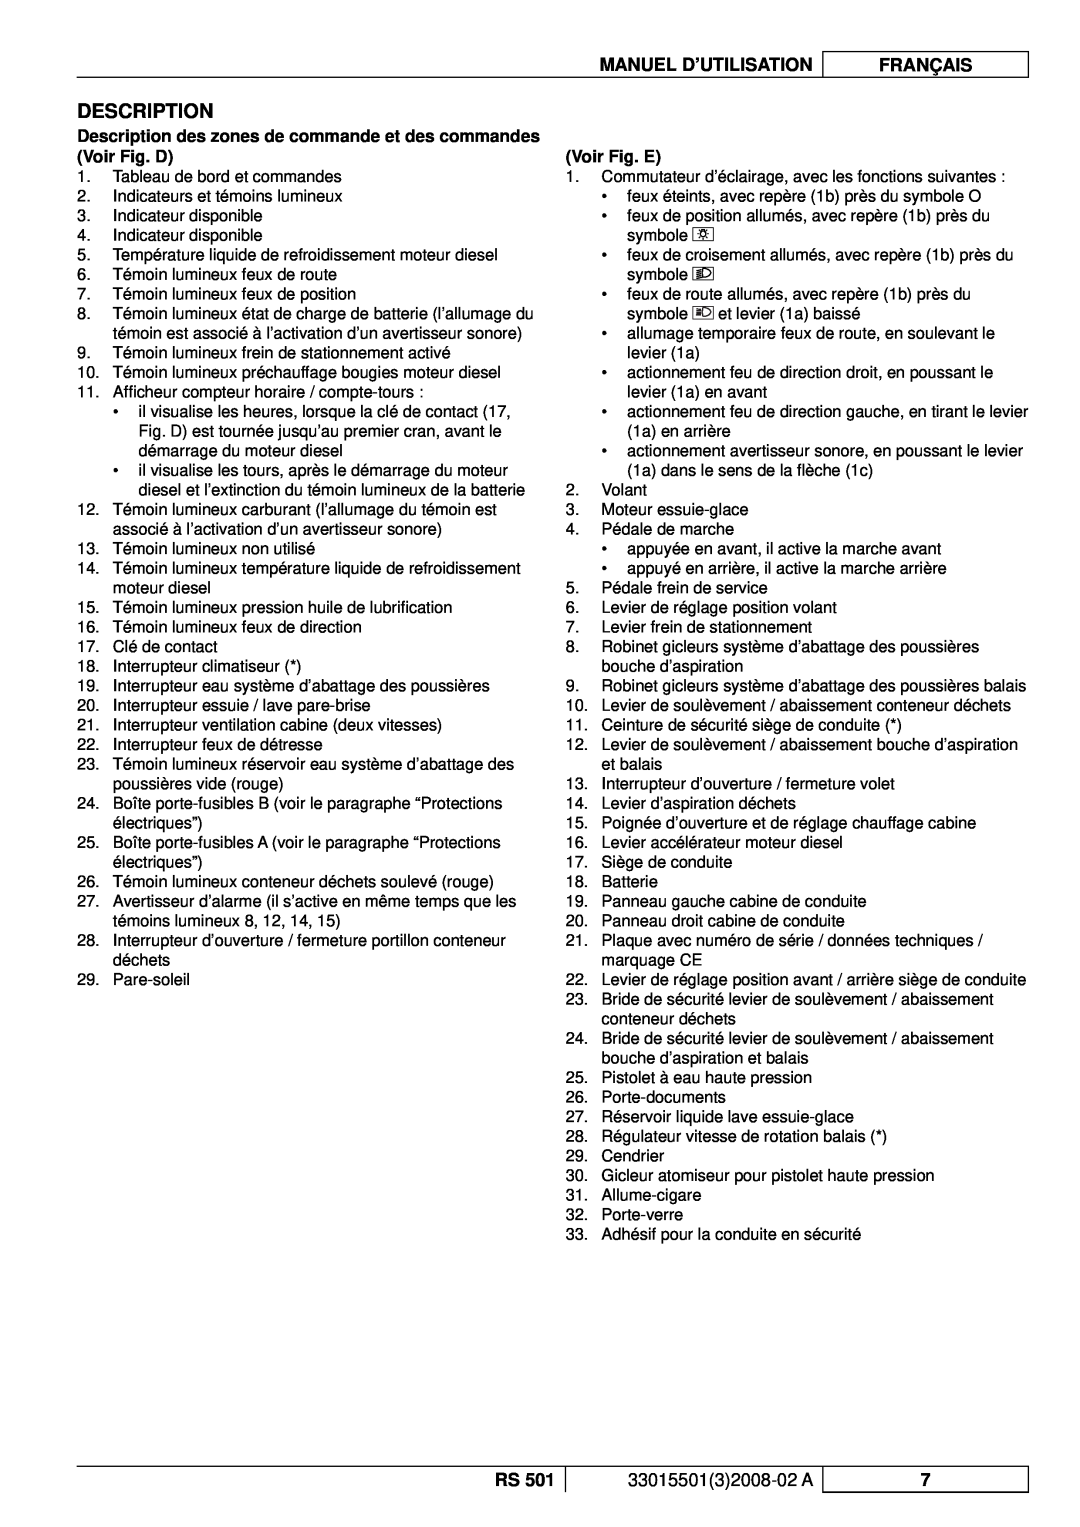 Nilfisk-ALTO RS 501 manuel dutilisation Description, Voir Fig. E, Manuel D’Utilisation, Français, 3301550132008-02A 